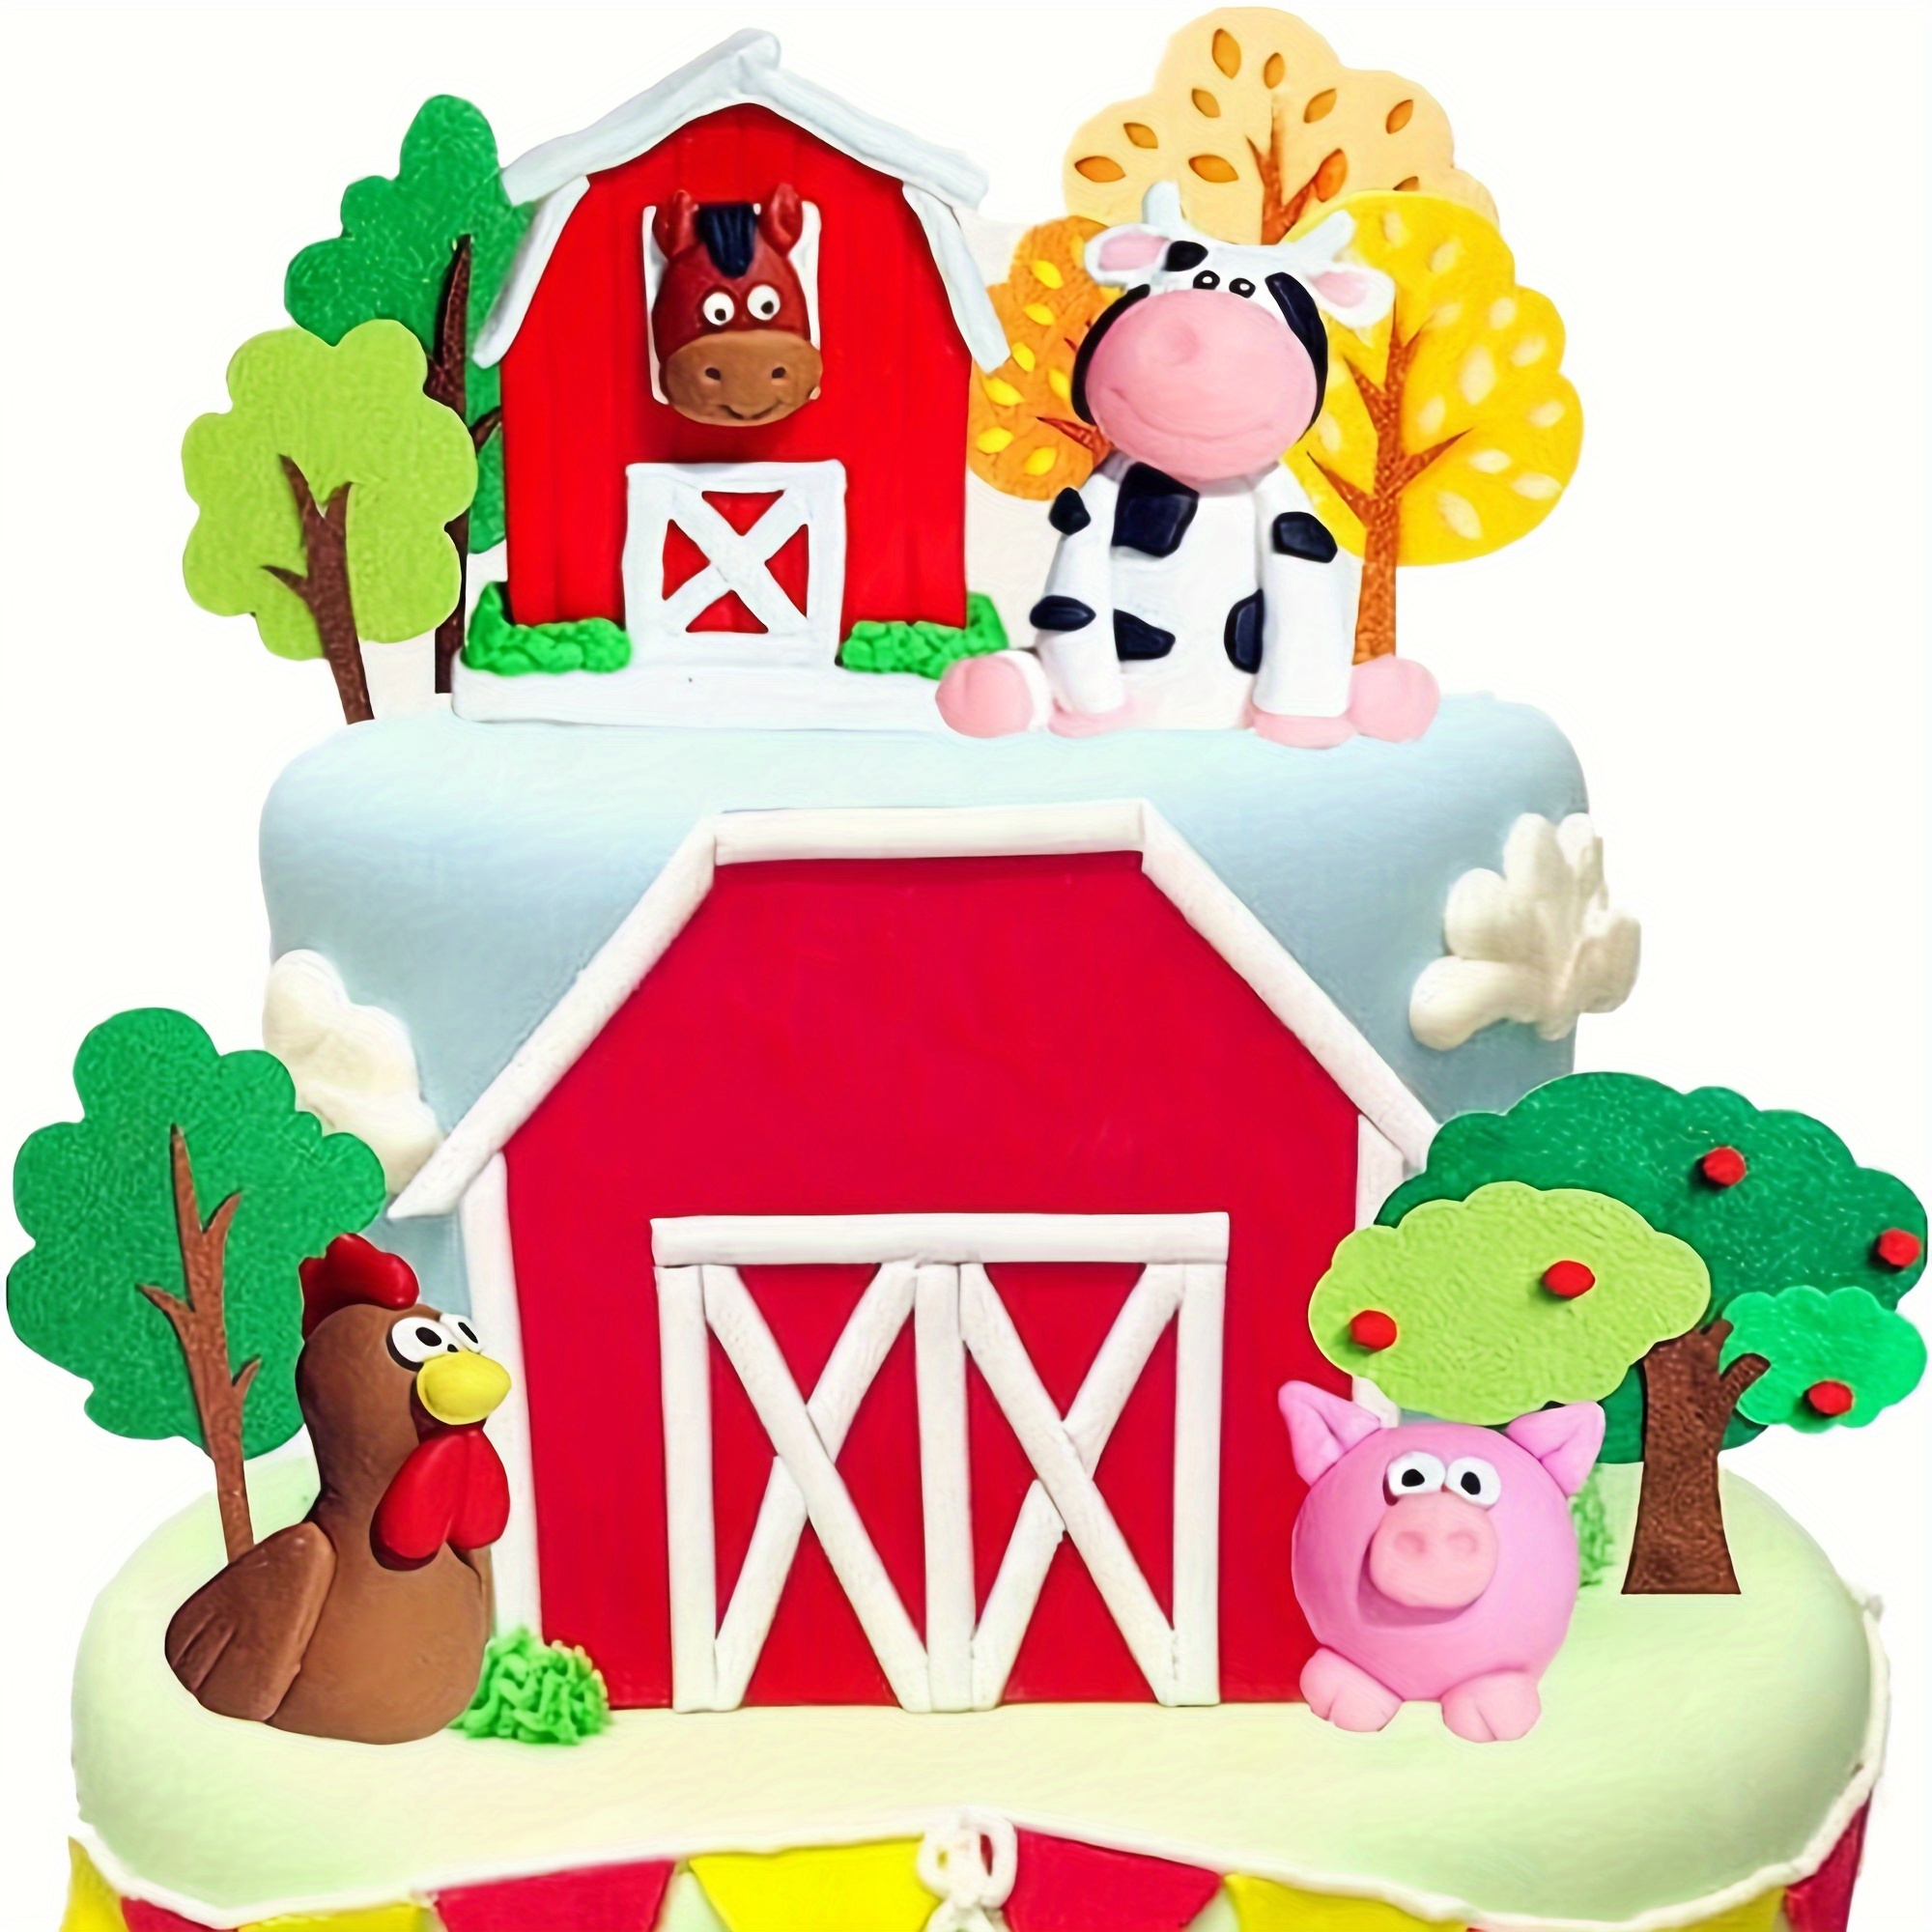 Globos de látex de 5 con caras de animales de granja, juego de 6 globos de  5, globo de vaca, globo de caballo, globo de cerdo